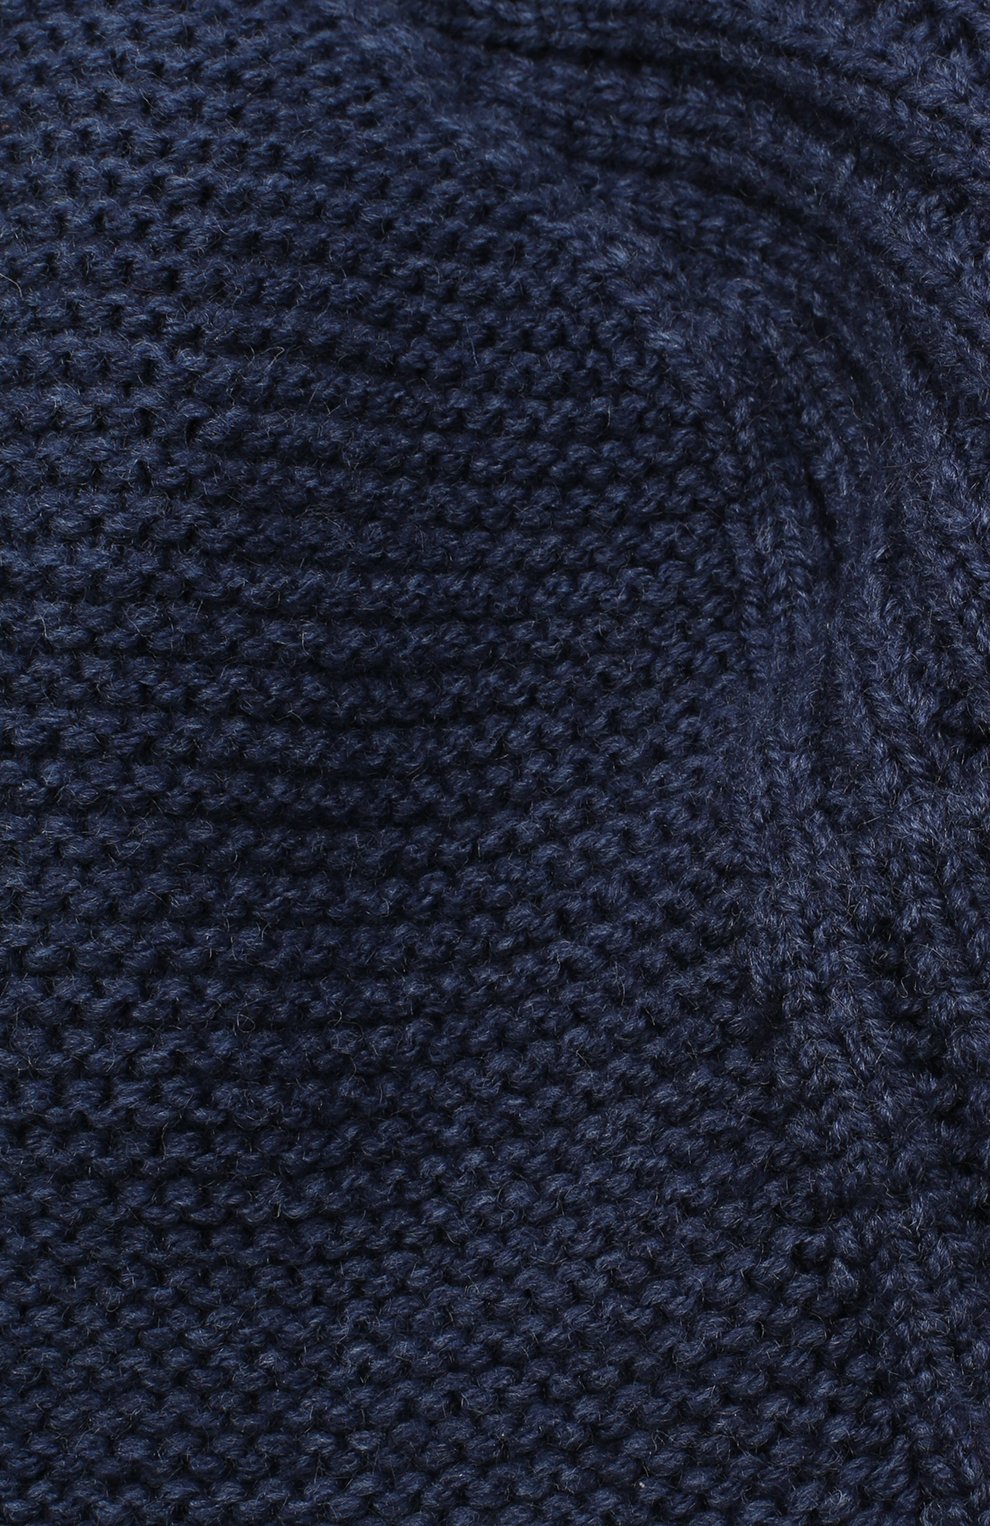 Мужская шапка-ушанка bright CANOE синего цвета, арт. 3447923 | Фото 3 (Материал: Текстиль, Шерсть, Синтетический материал; Кросс-КТ: Трикотаж)